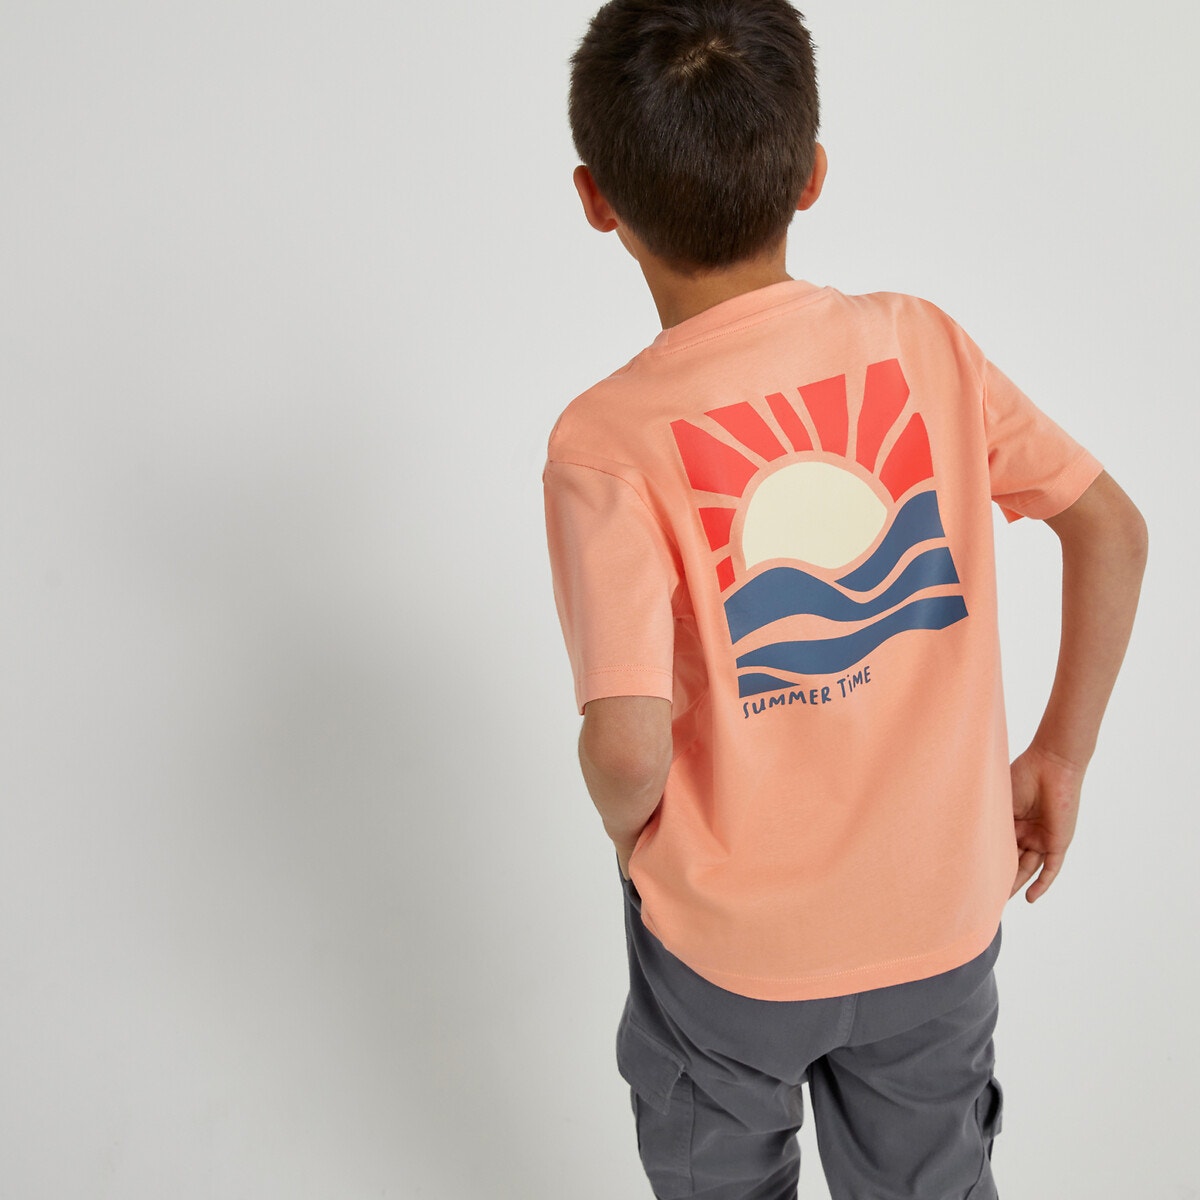 Μόδα > Παιδικά > Αγόρι > T-shirt, πόλο > Κοντά μανίκια Κοντομάνικο T-shirt με στάμπα ηλιοβασίλεμα στην πλάτη